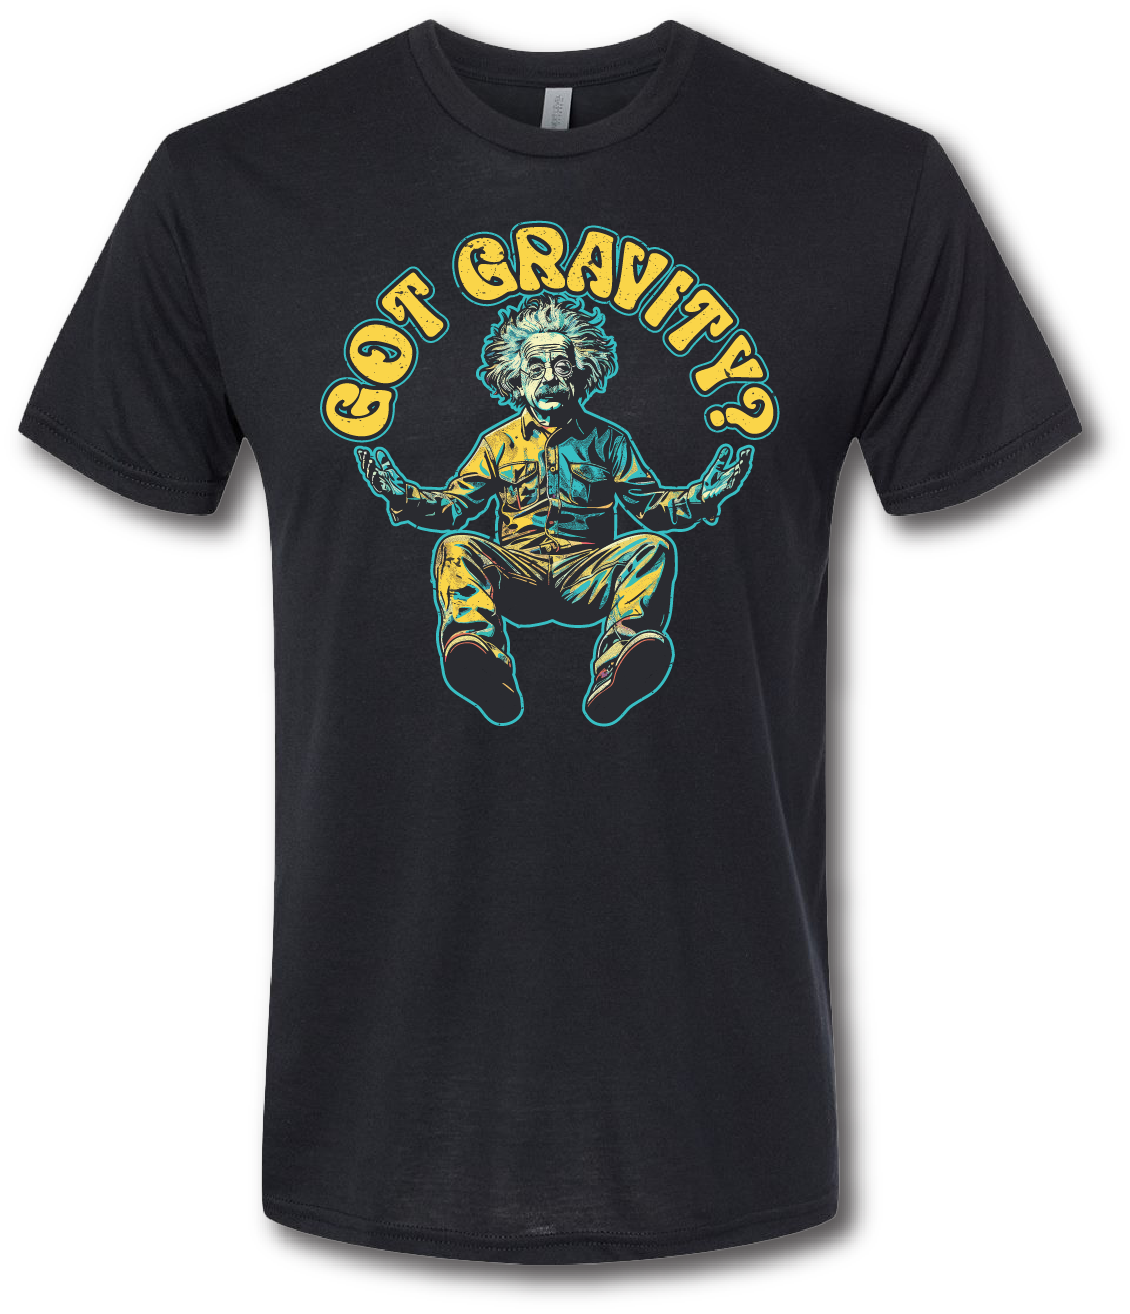 Got Gravity Short Sleeve T-shirt